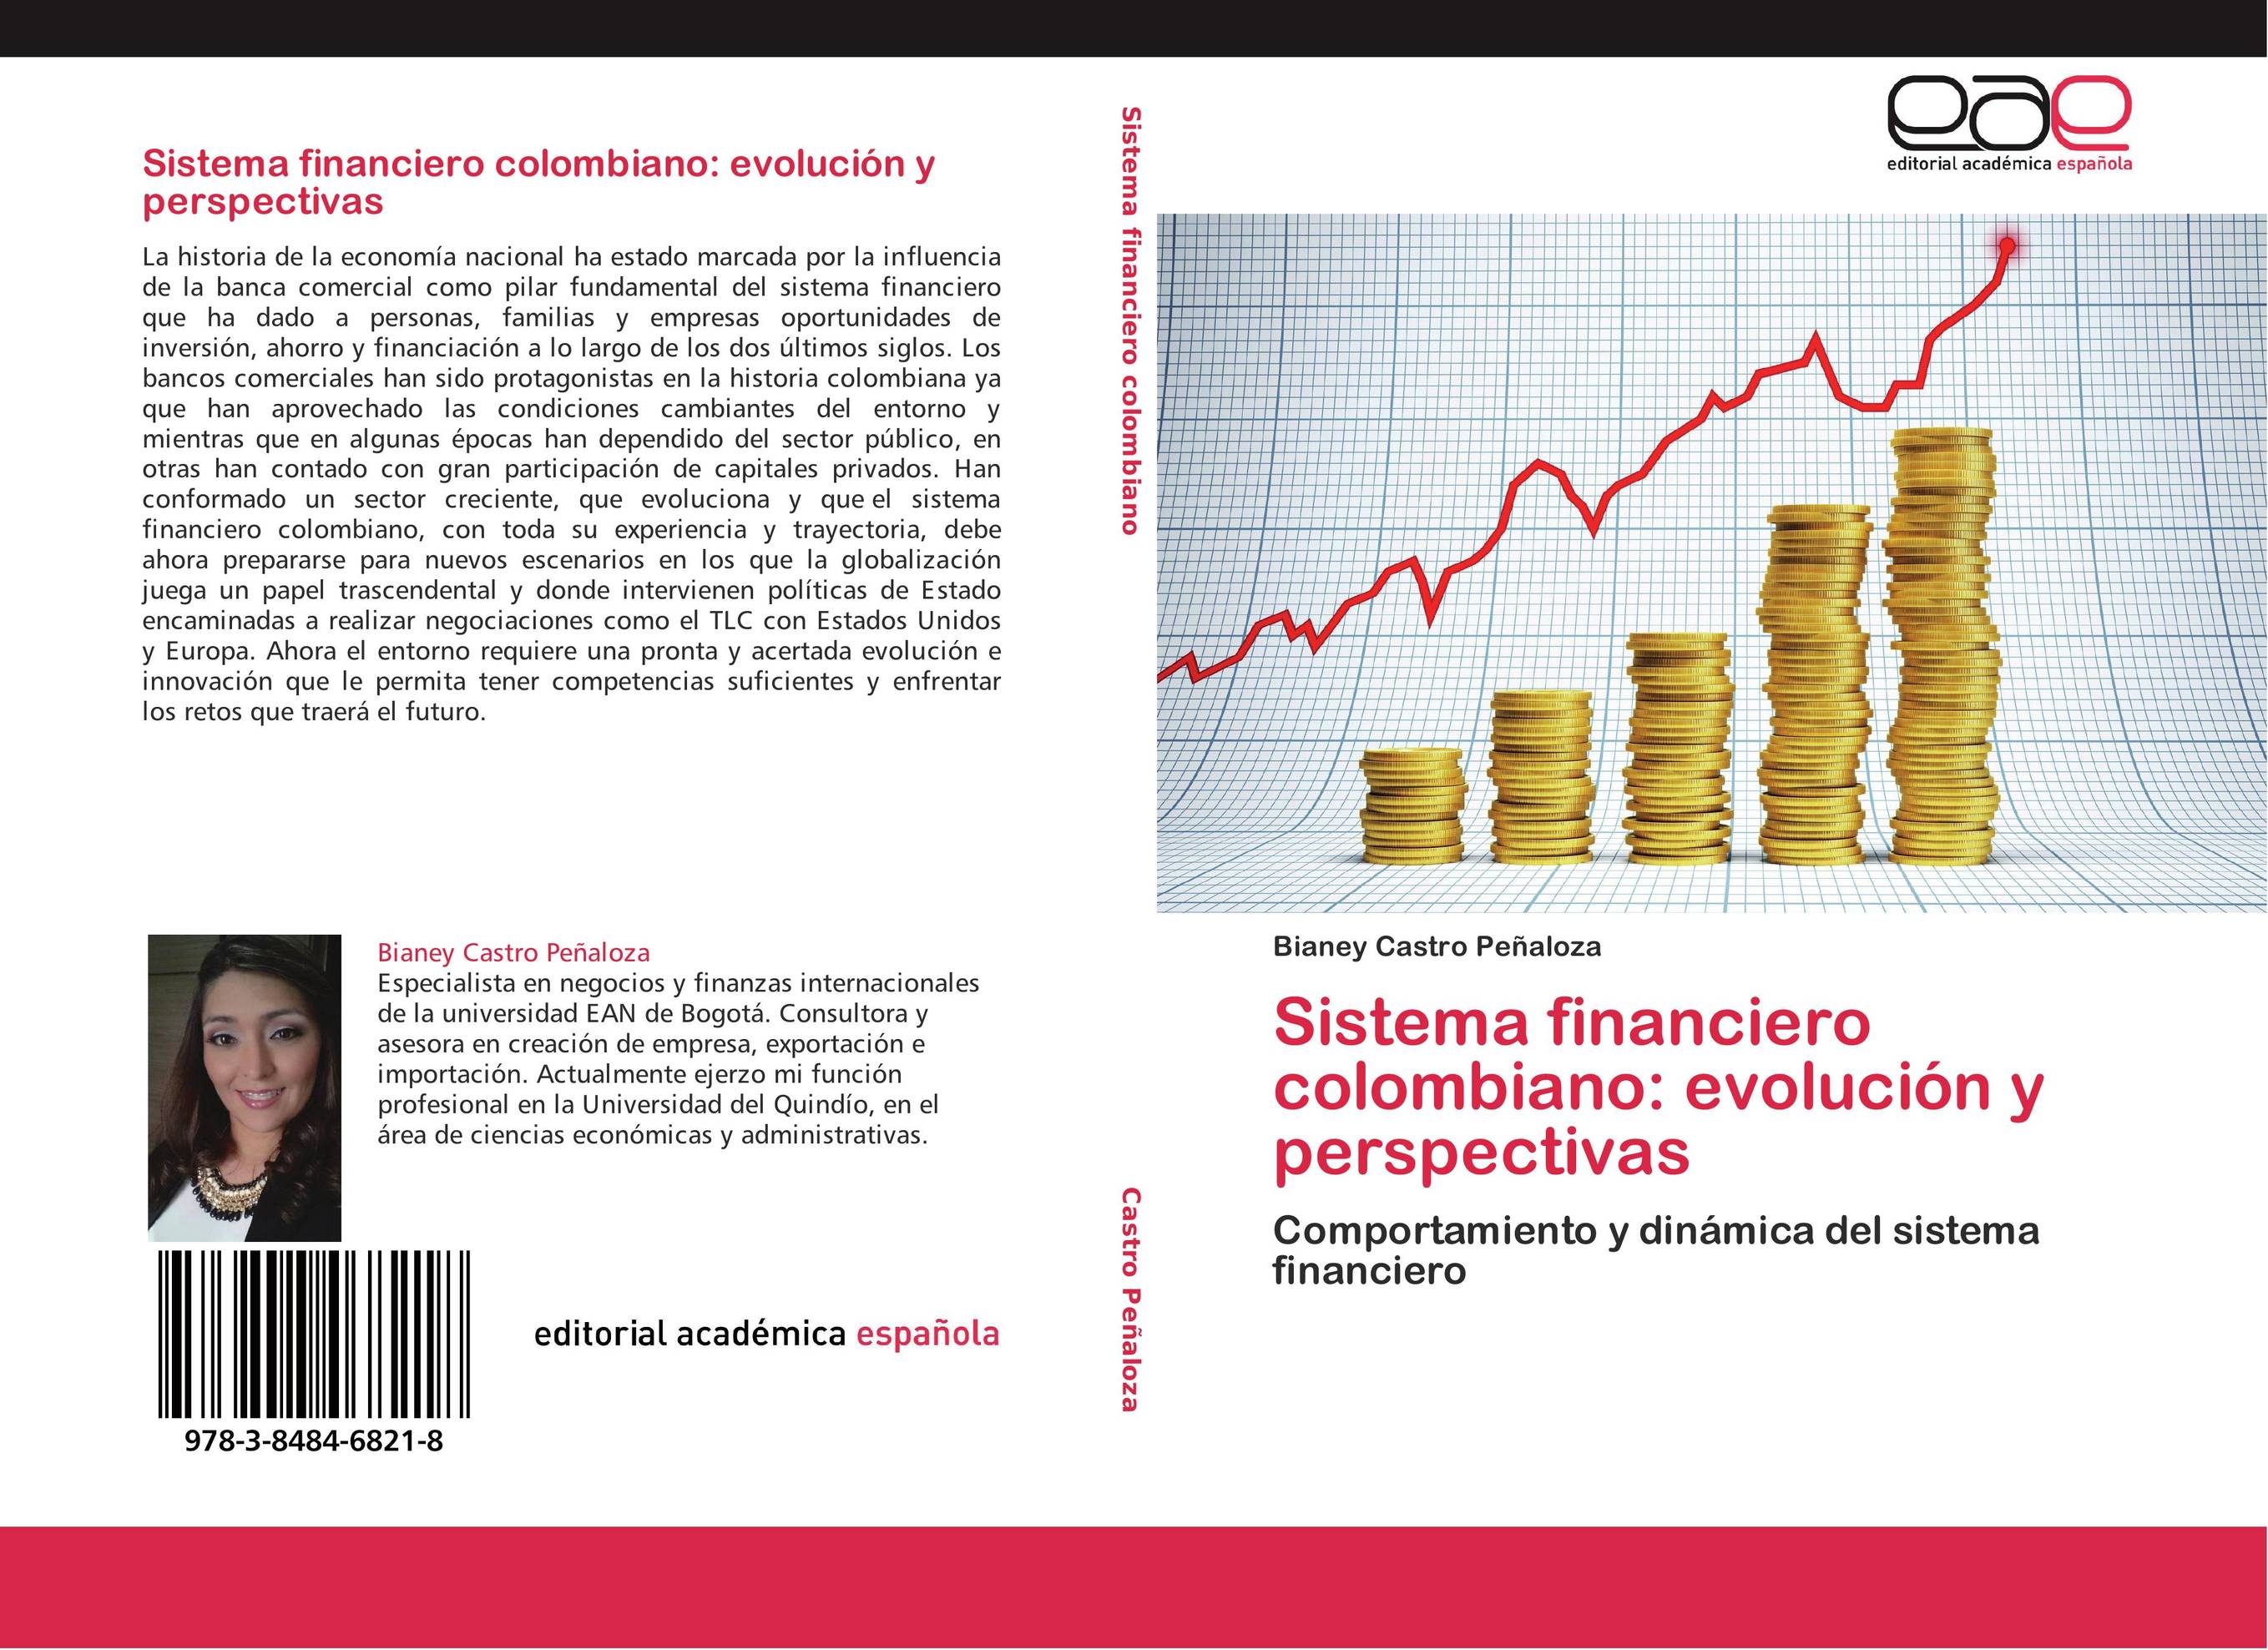 Sistema financiero colombiano: evolución y perspectivas